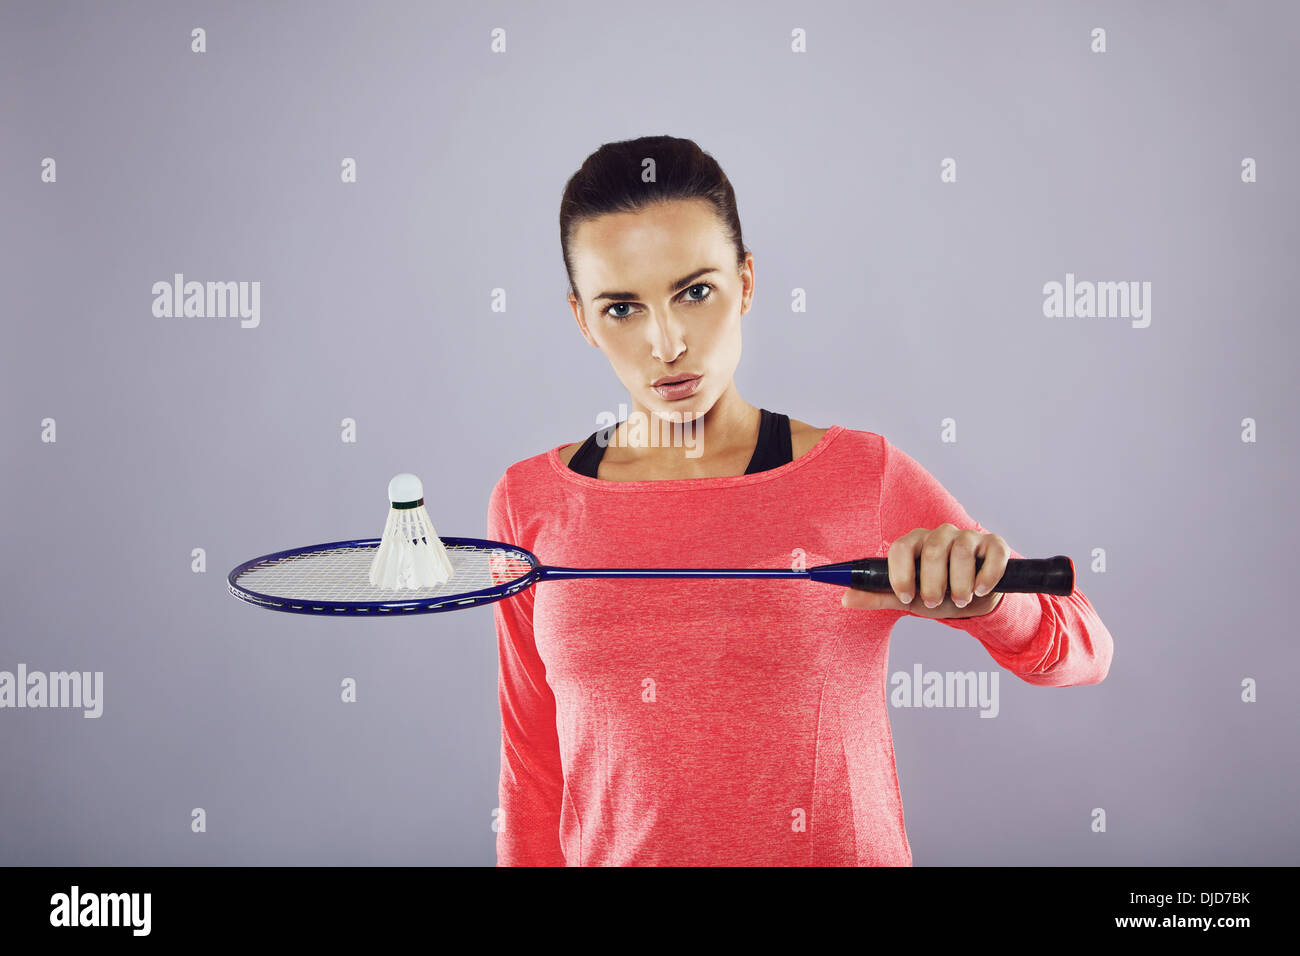 Ritratto di fiducioso giovane ragazza tenendo un badminton racchetta con volano guardando la telecamera contro uno sfondo grigio. Foto Stock